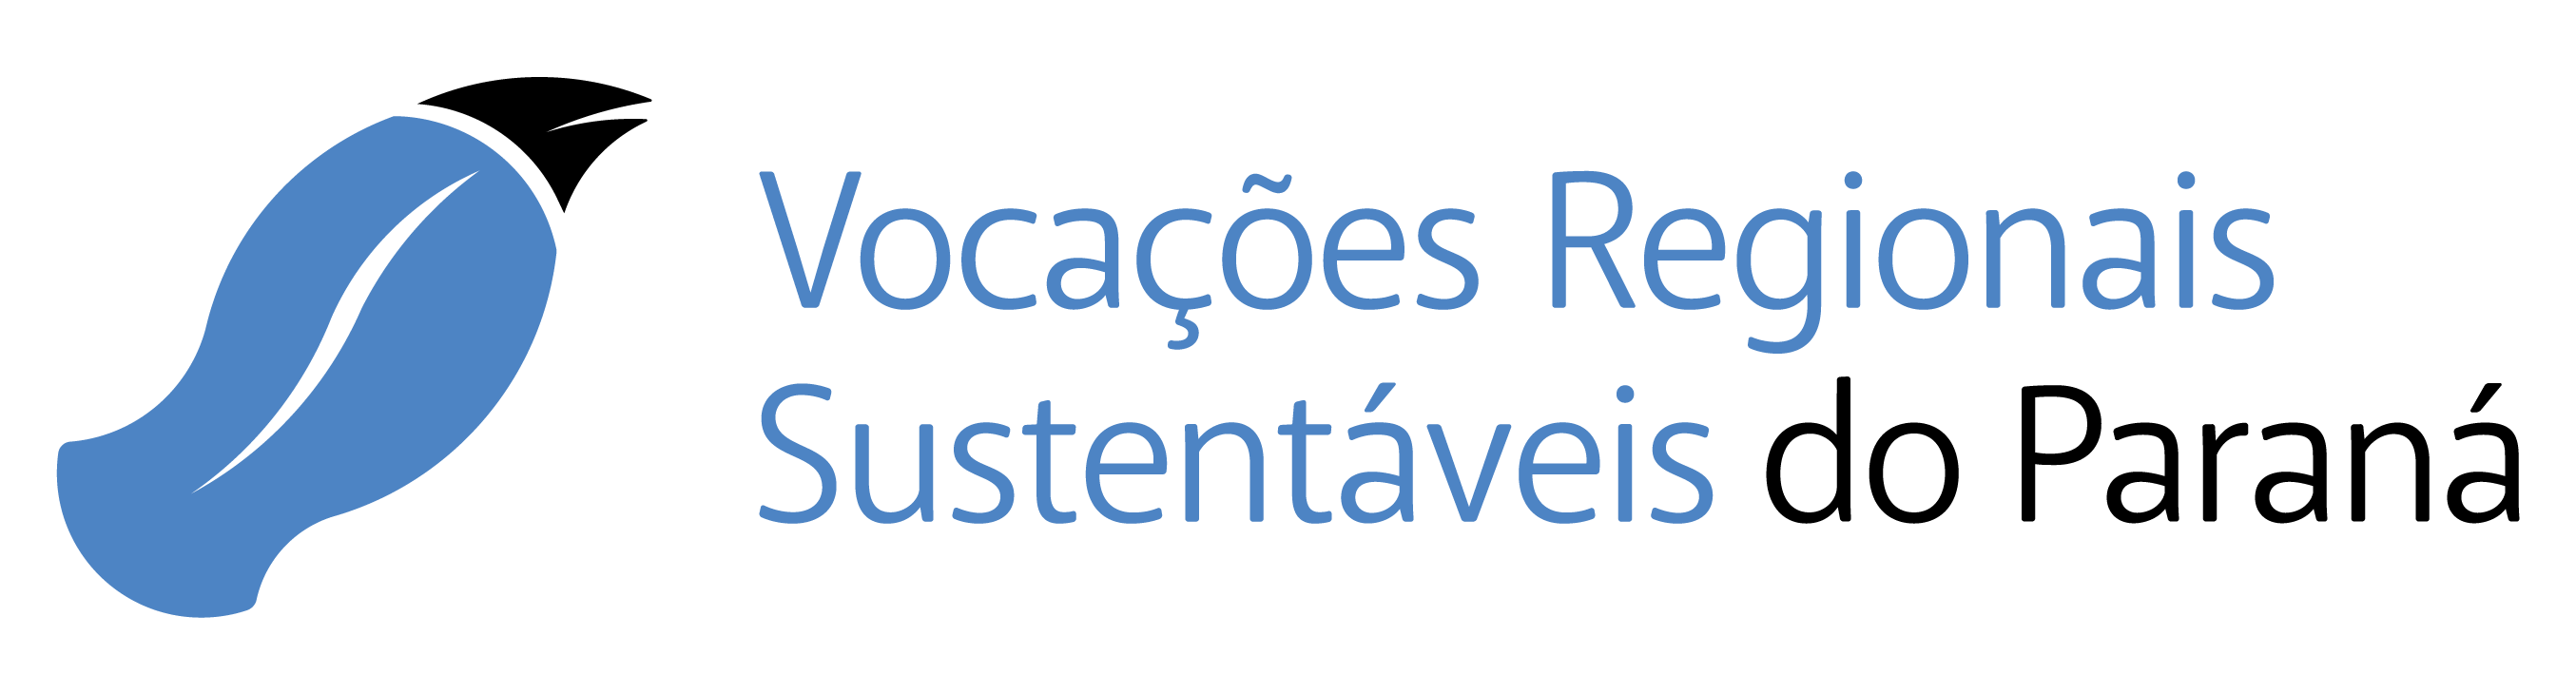 VRS - Vocações Regionais Sustentáveis do Paraná